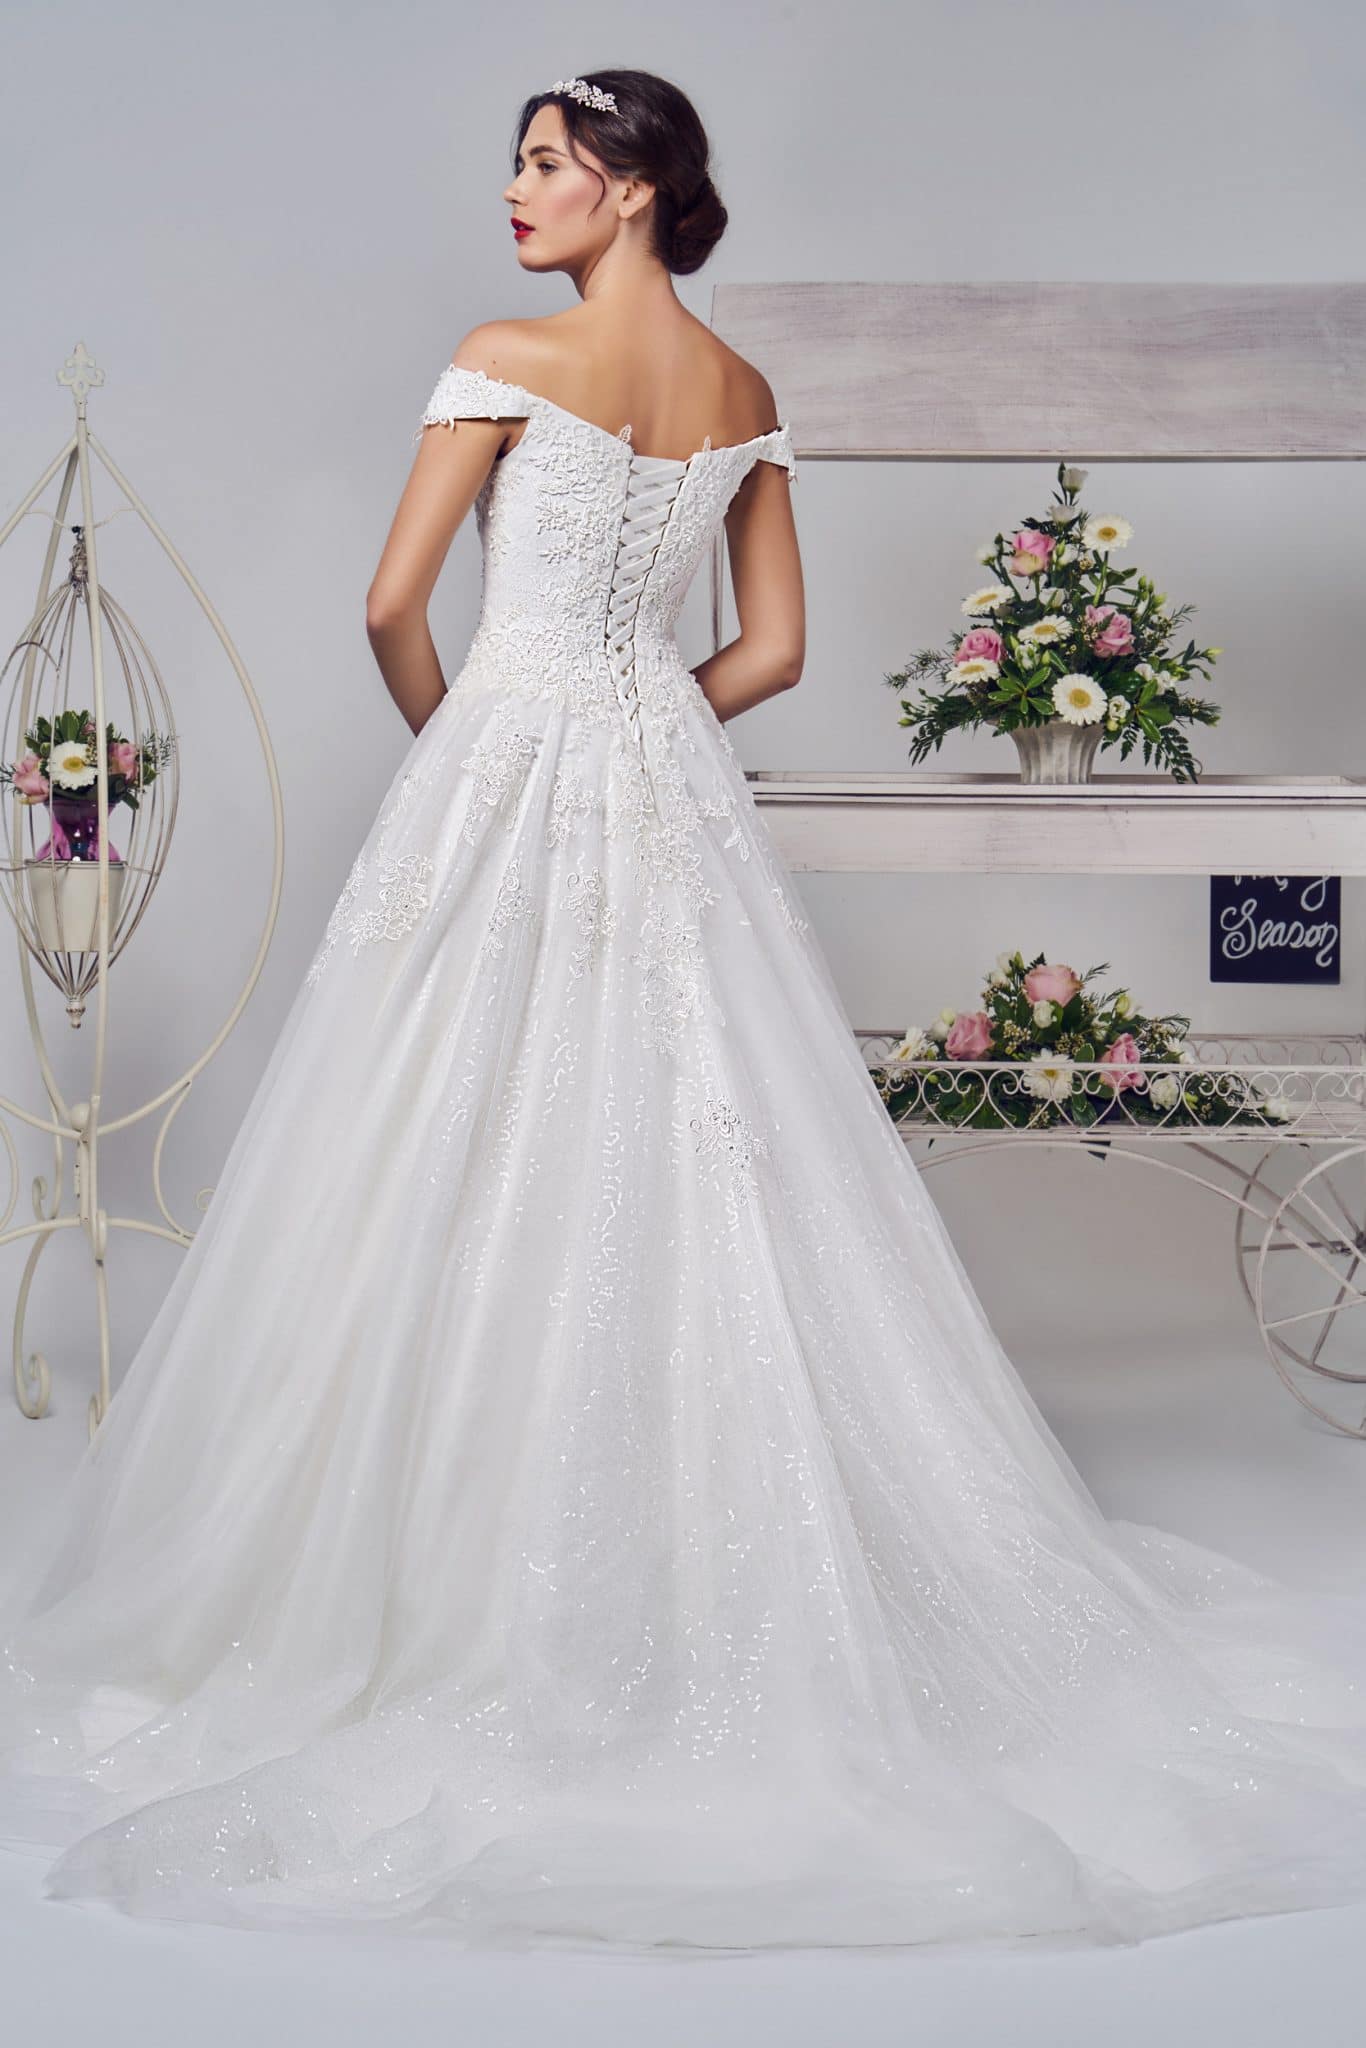 Olivia George Bridal - Phoenix Wedding Dresses